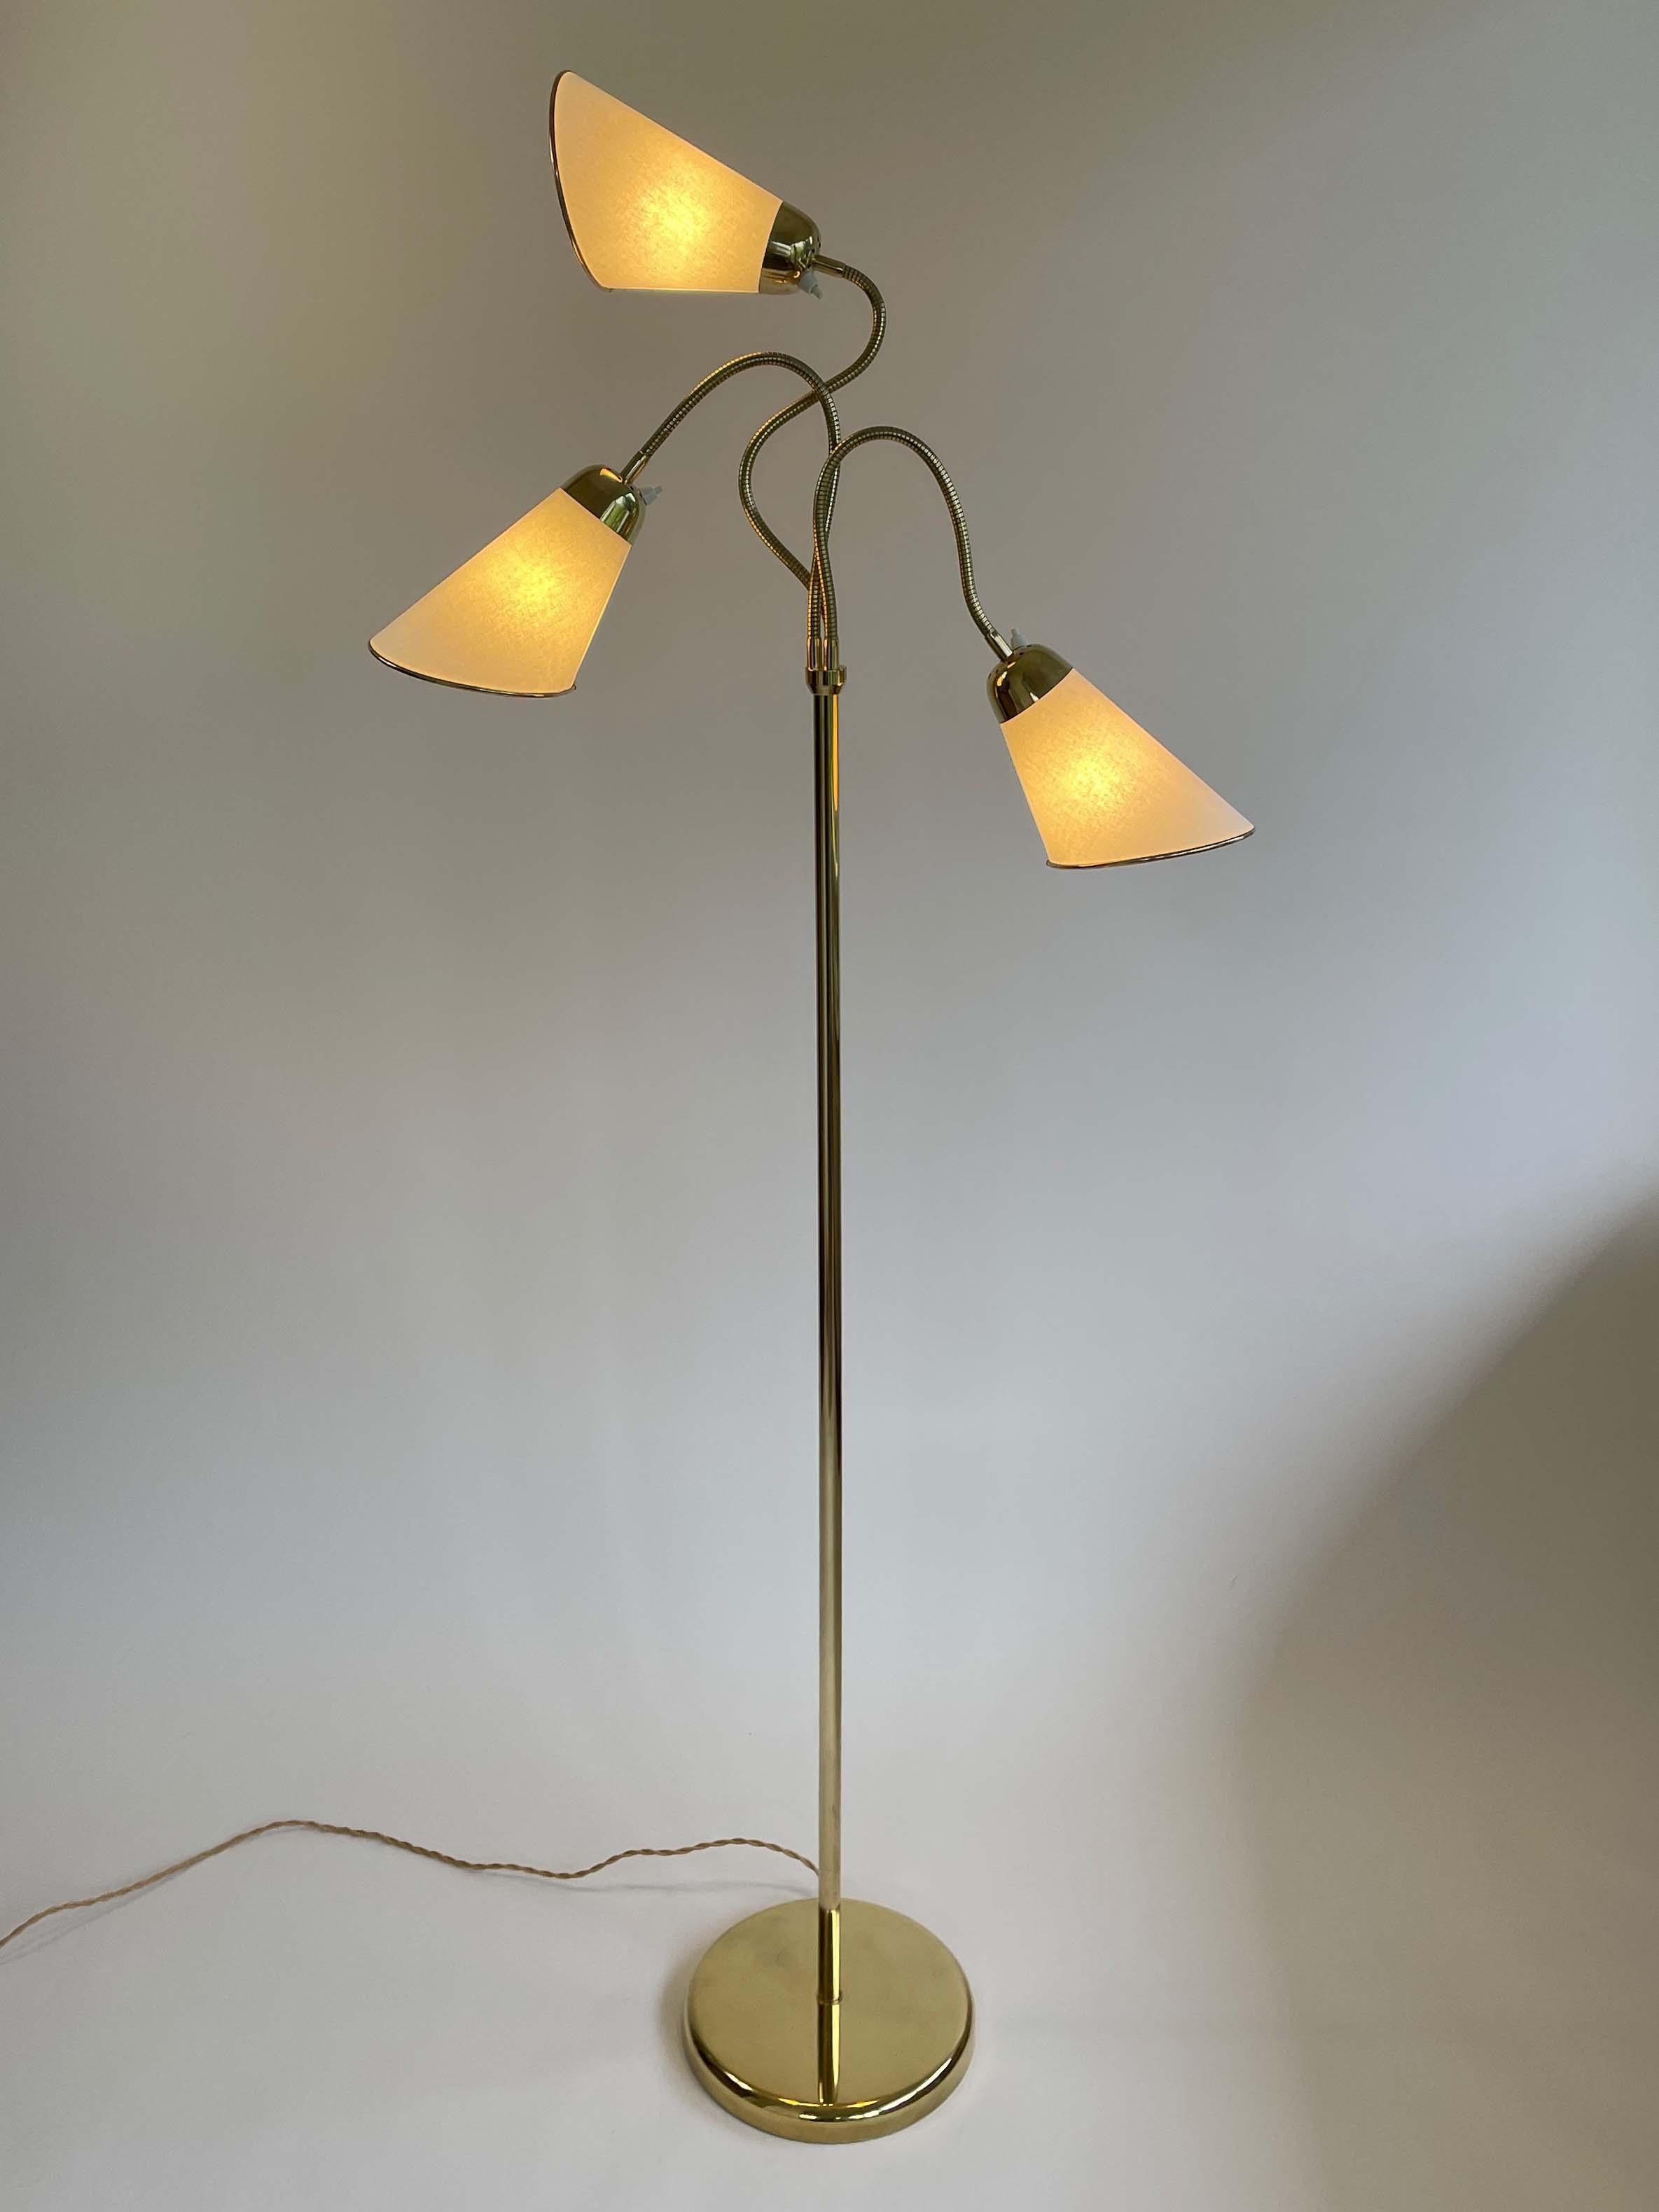 Triple Gooseneck Brass & Off White Fabric Floor Lamp, Sweden 1950s For Sale 2